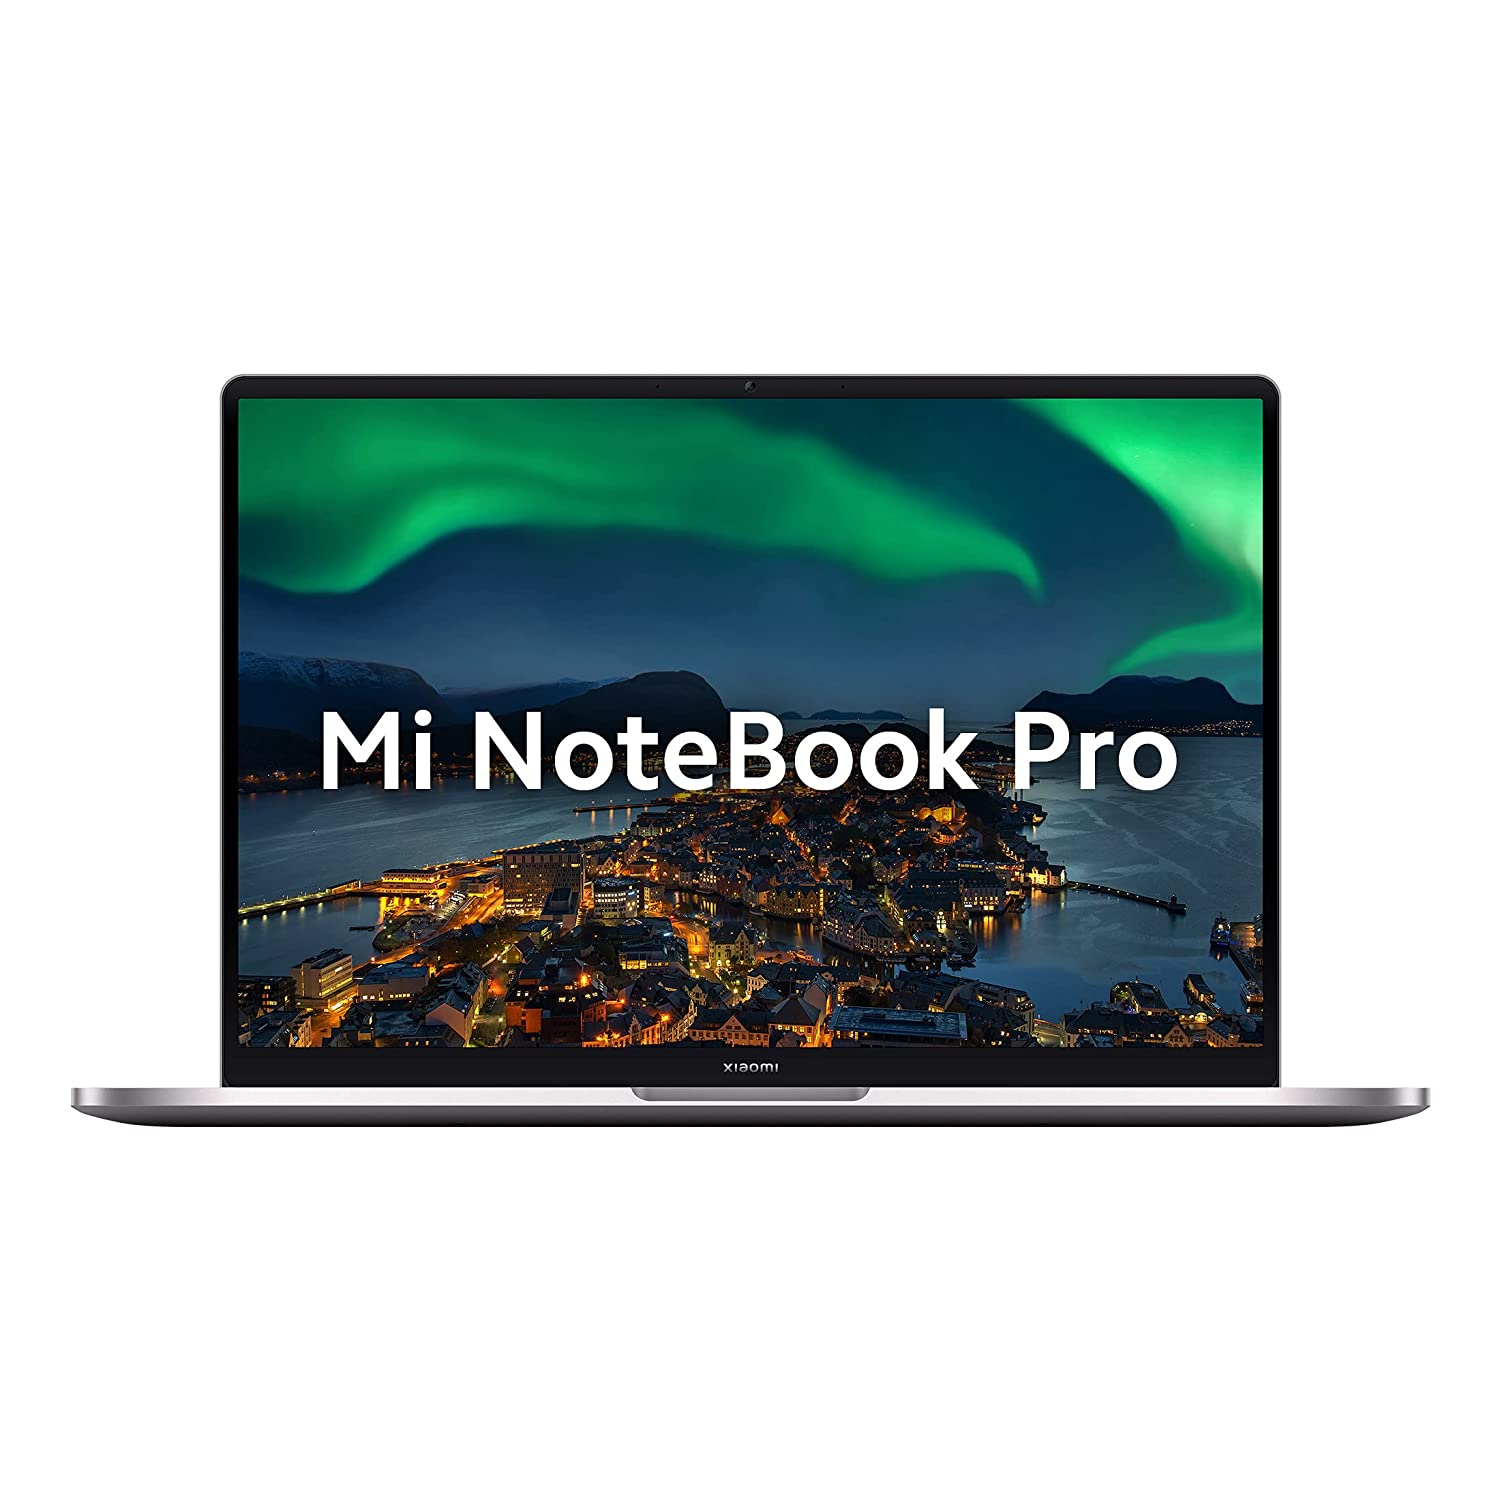 इस वीकेंड डील को न करें मिस, 20 हजार रुपये कम में खरीदें Mi Notebook Pro